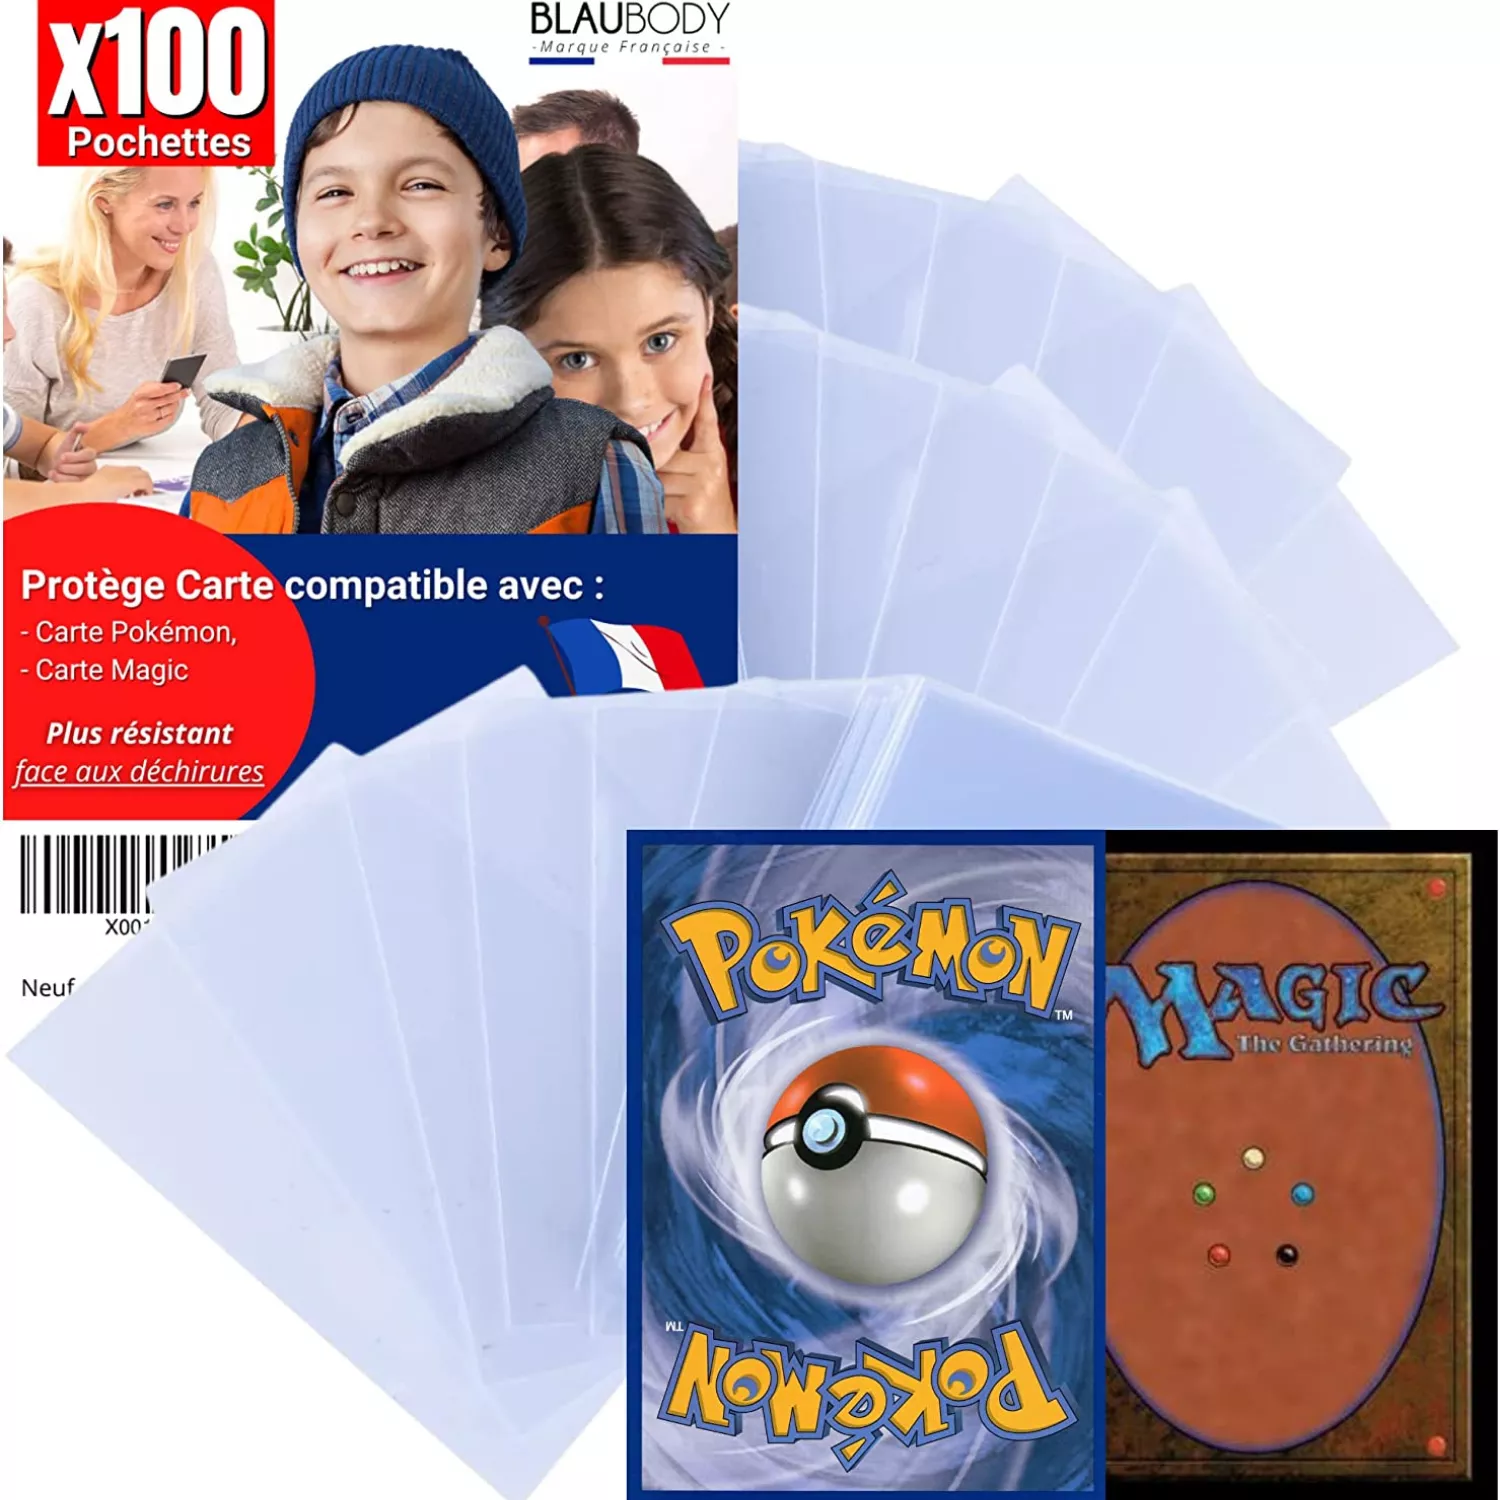 Protège carte Pokémon blaubody®x100